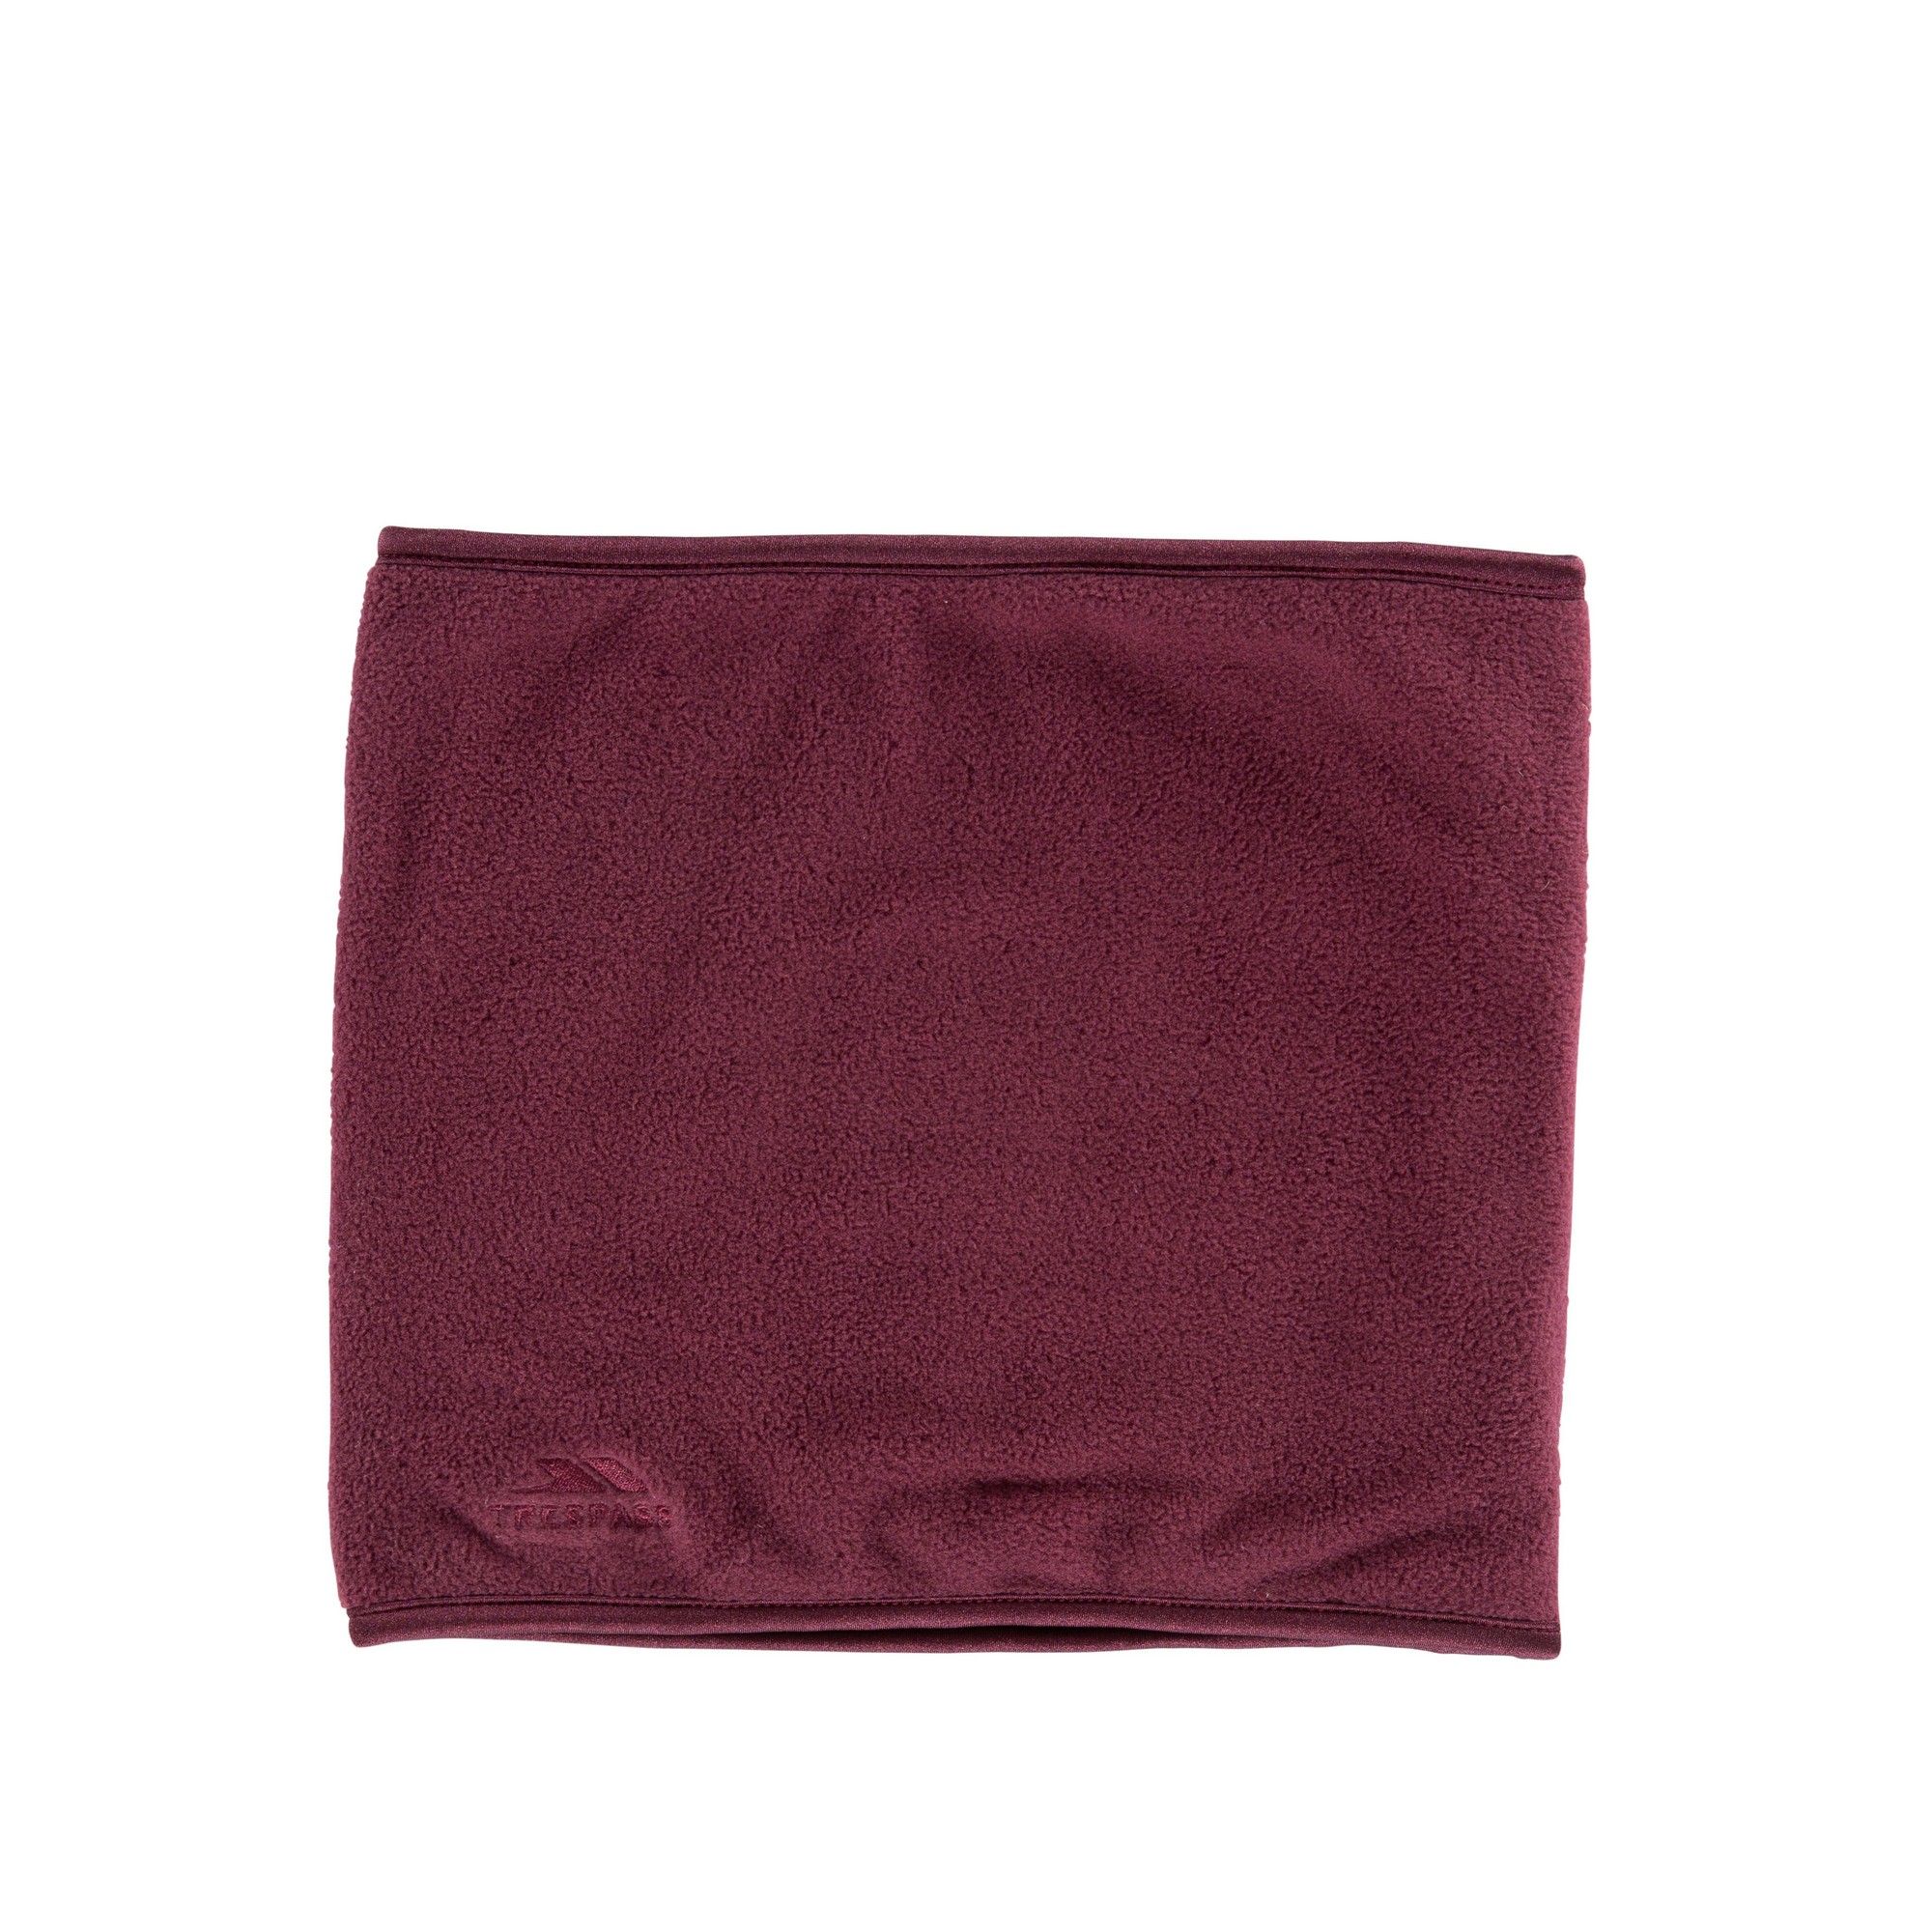 Double sided fleece neck warmer. Elastane binding. Embroidered logo. Outer: 100% polyester fleece, Binding: 100% elastane.